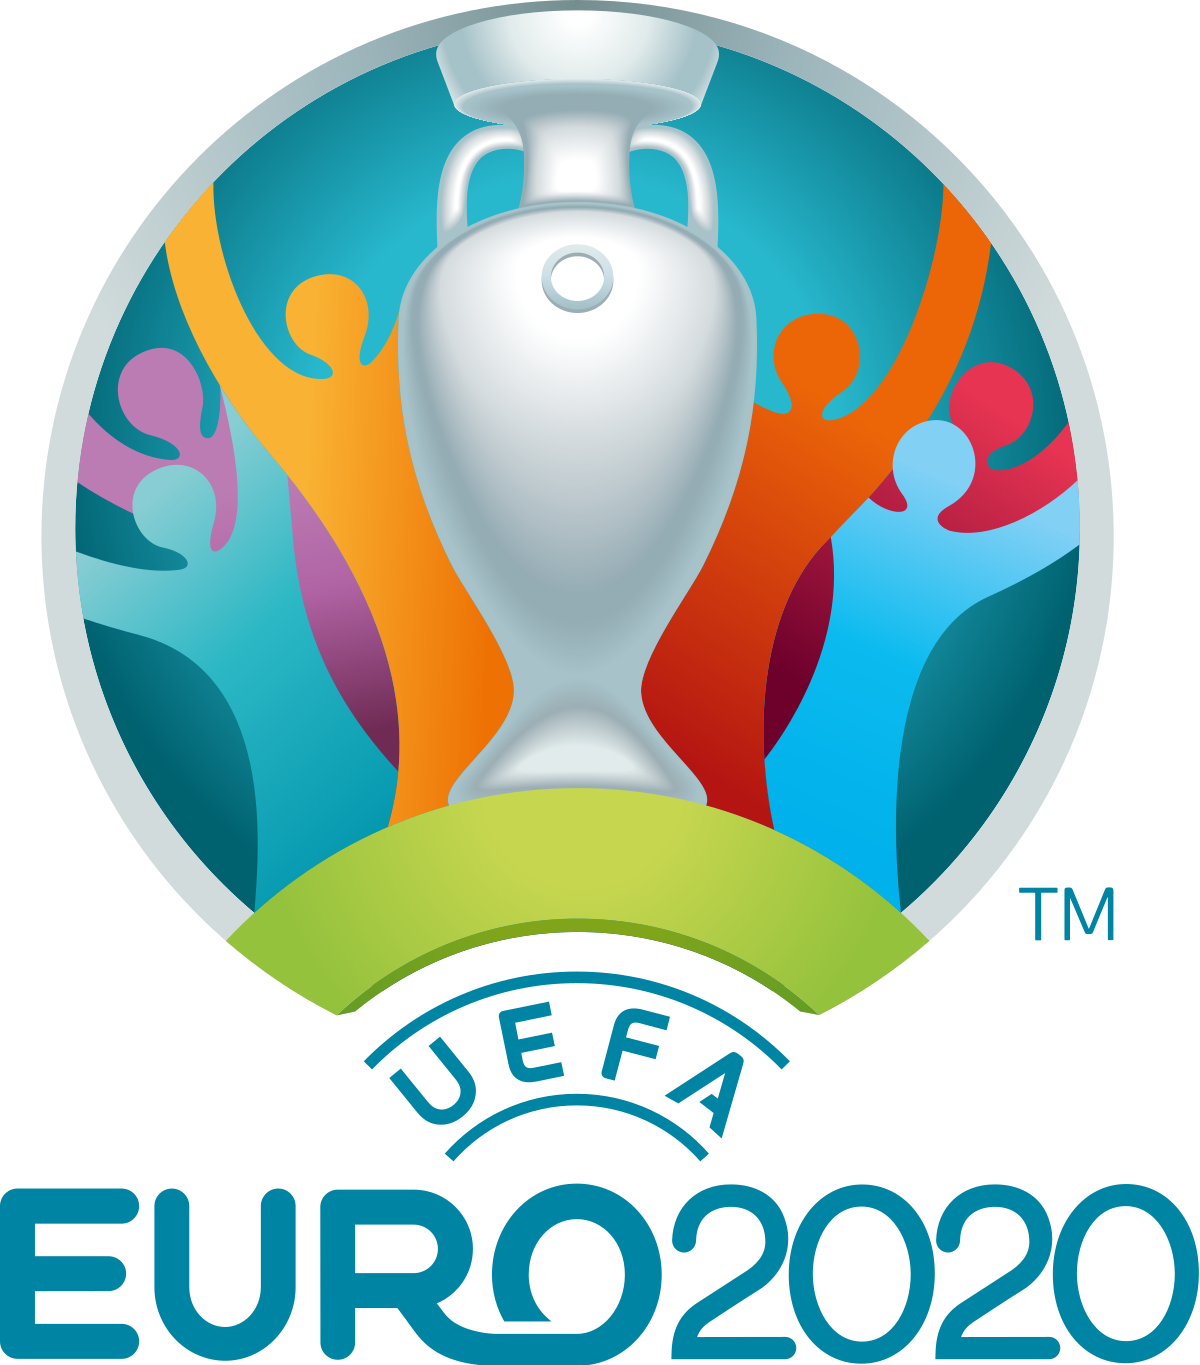 2020 uefa euro wikipedia #32350